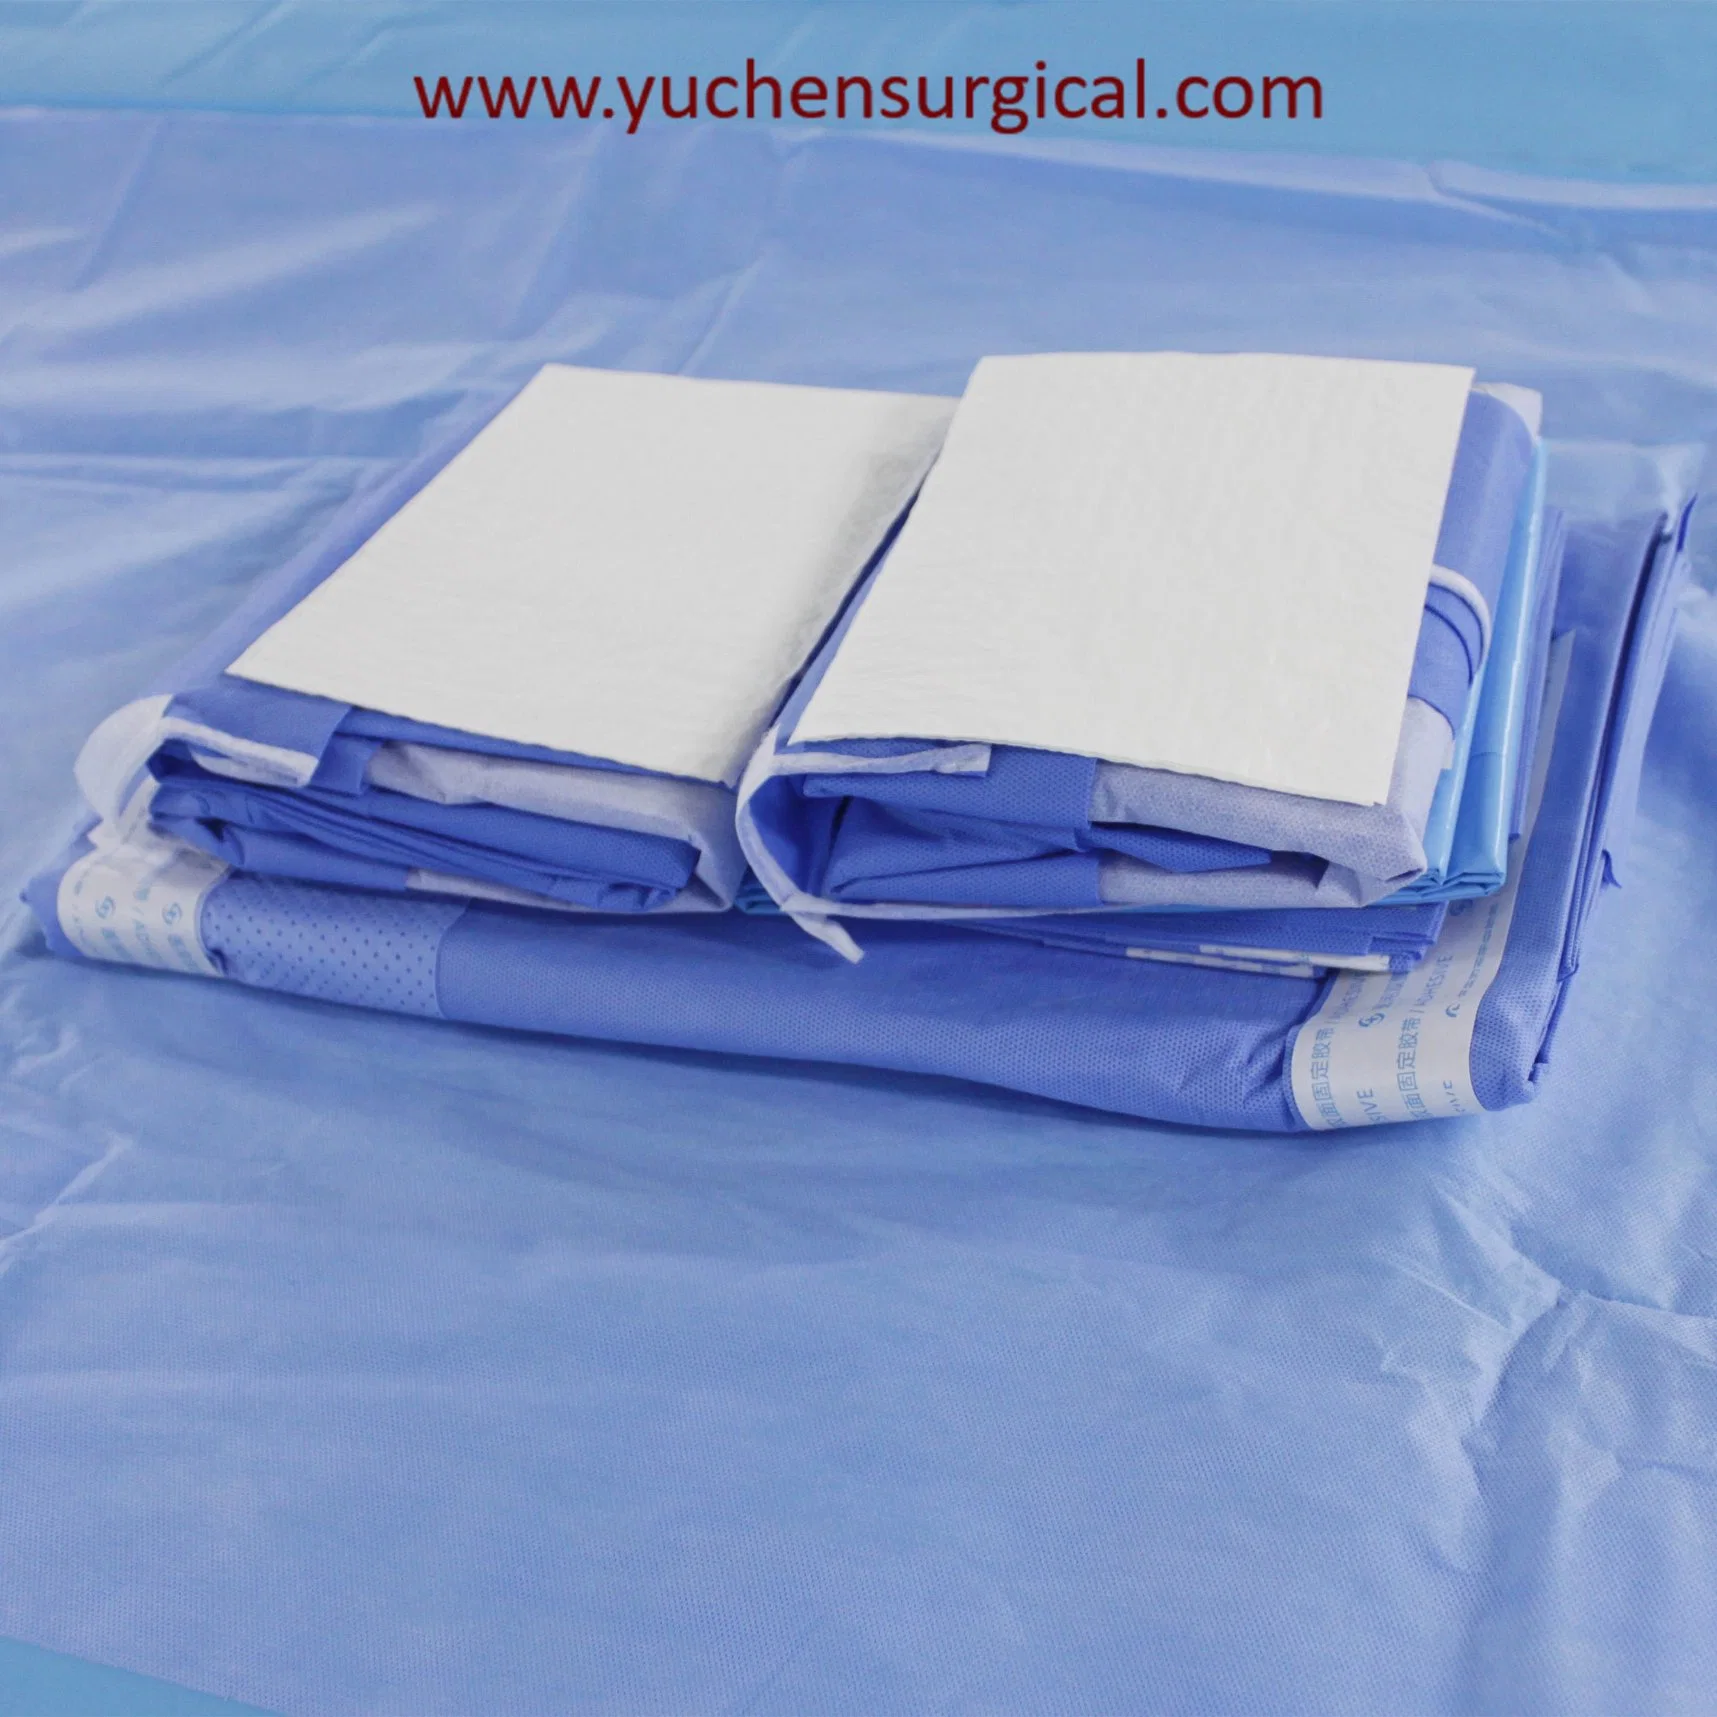 Emballage pour drape universel stérile pour chirurgie générale à usage hospitalier